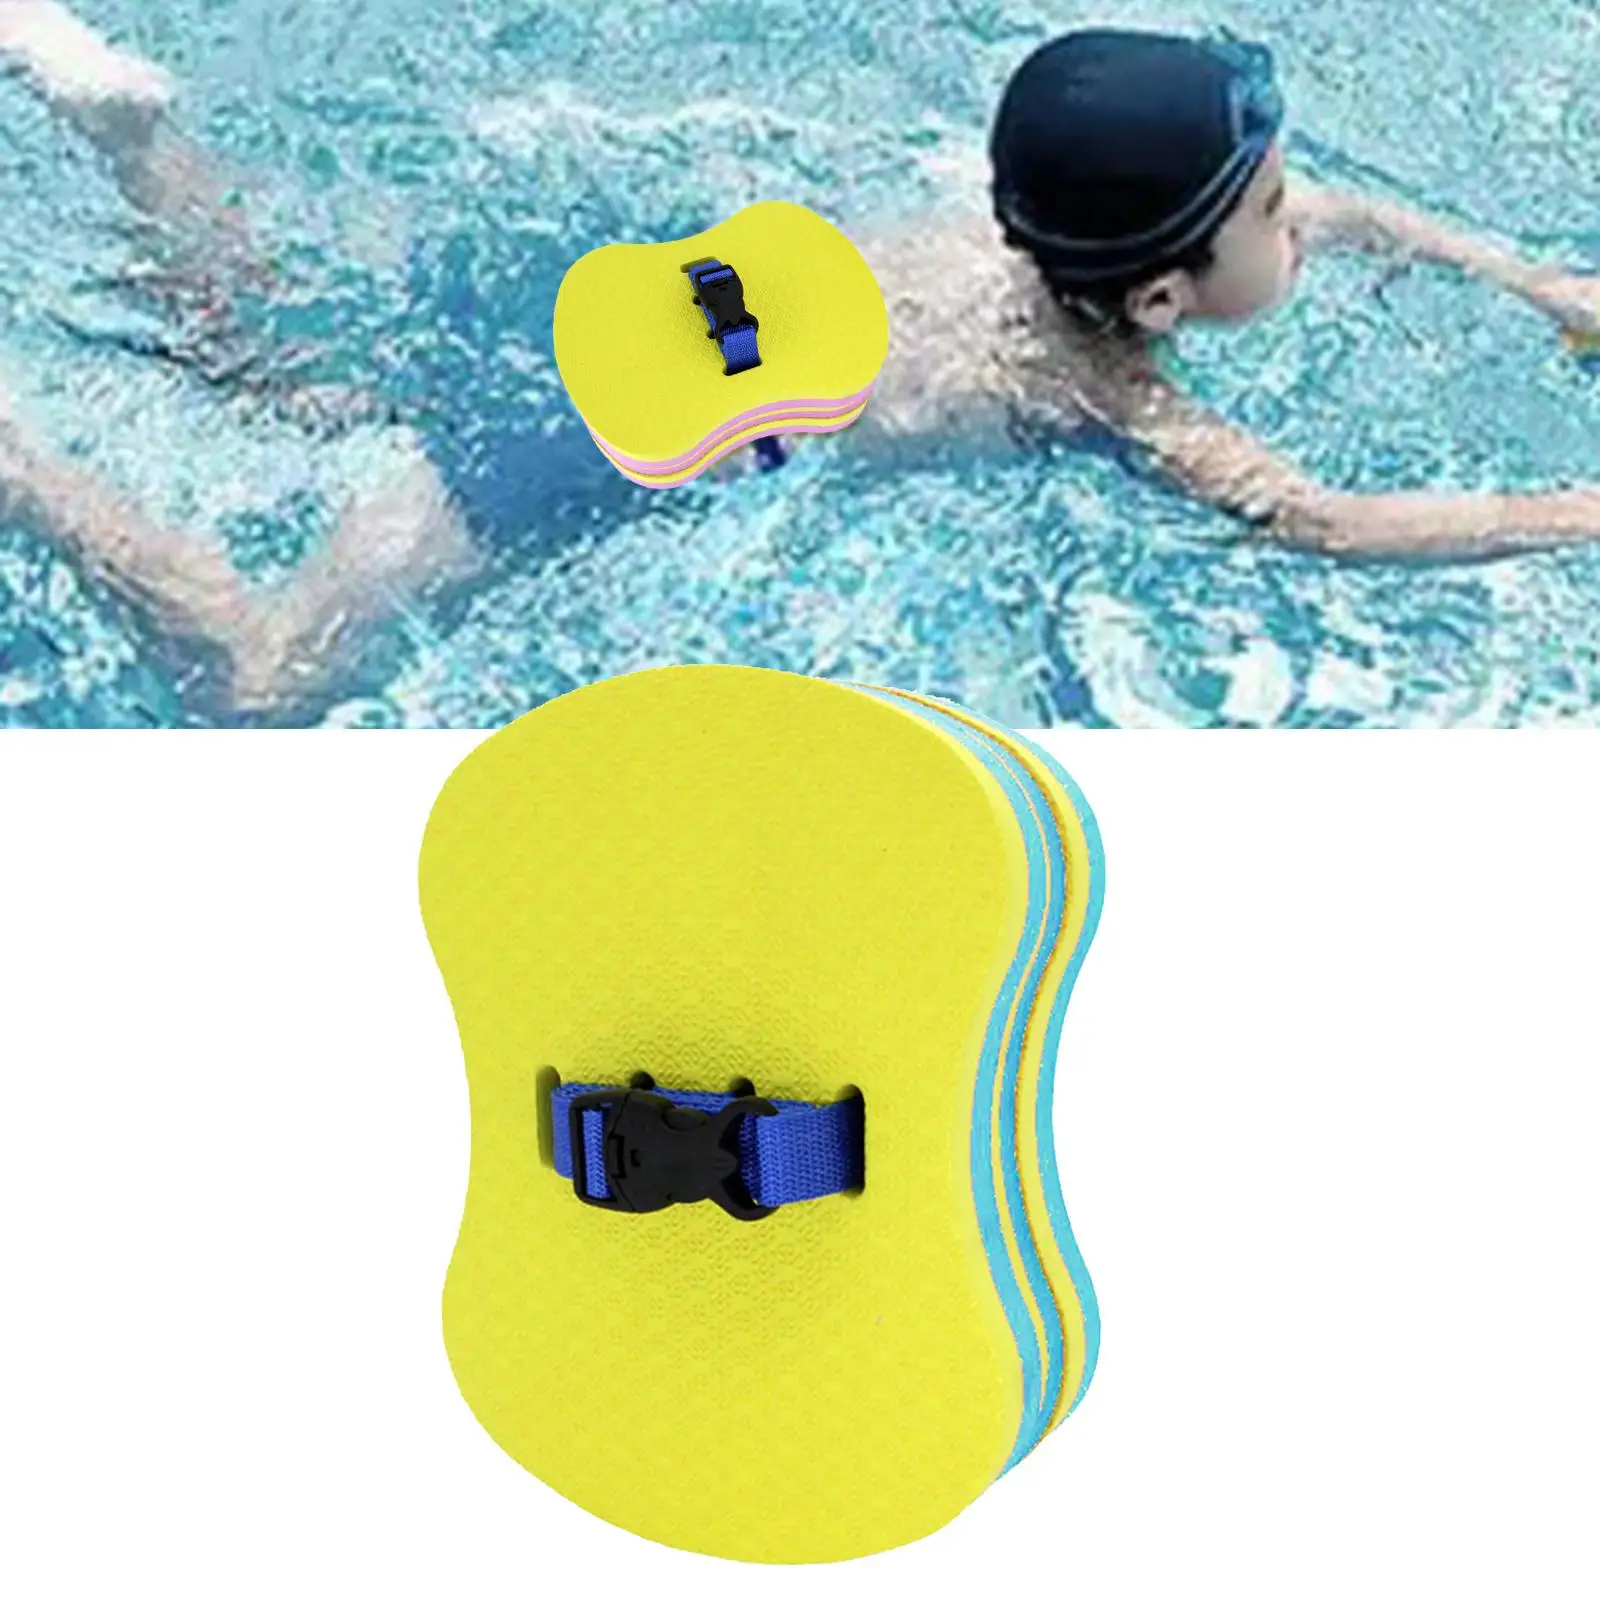 Регулируемый сзади поролоновый плавающий пояс для безопасности талии, кикборд, плавательное средство для продвинутых пловцов, водные виды спорта, игрушки для бассейнов